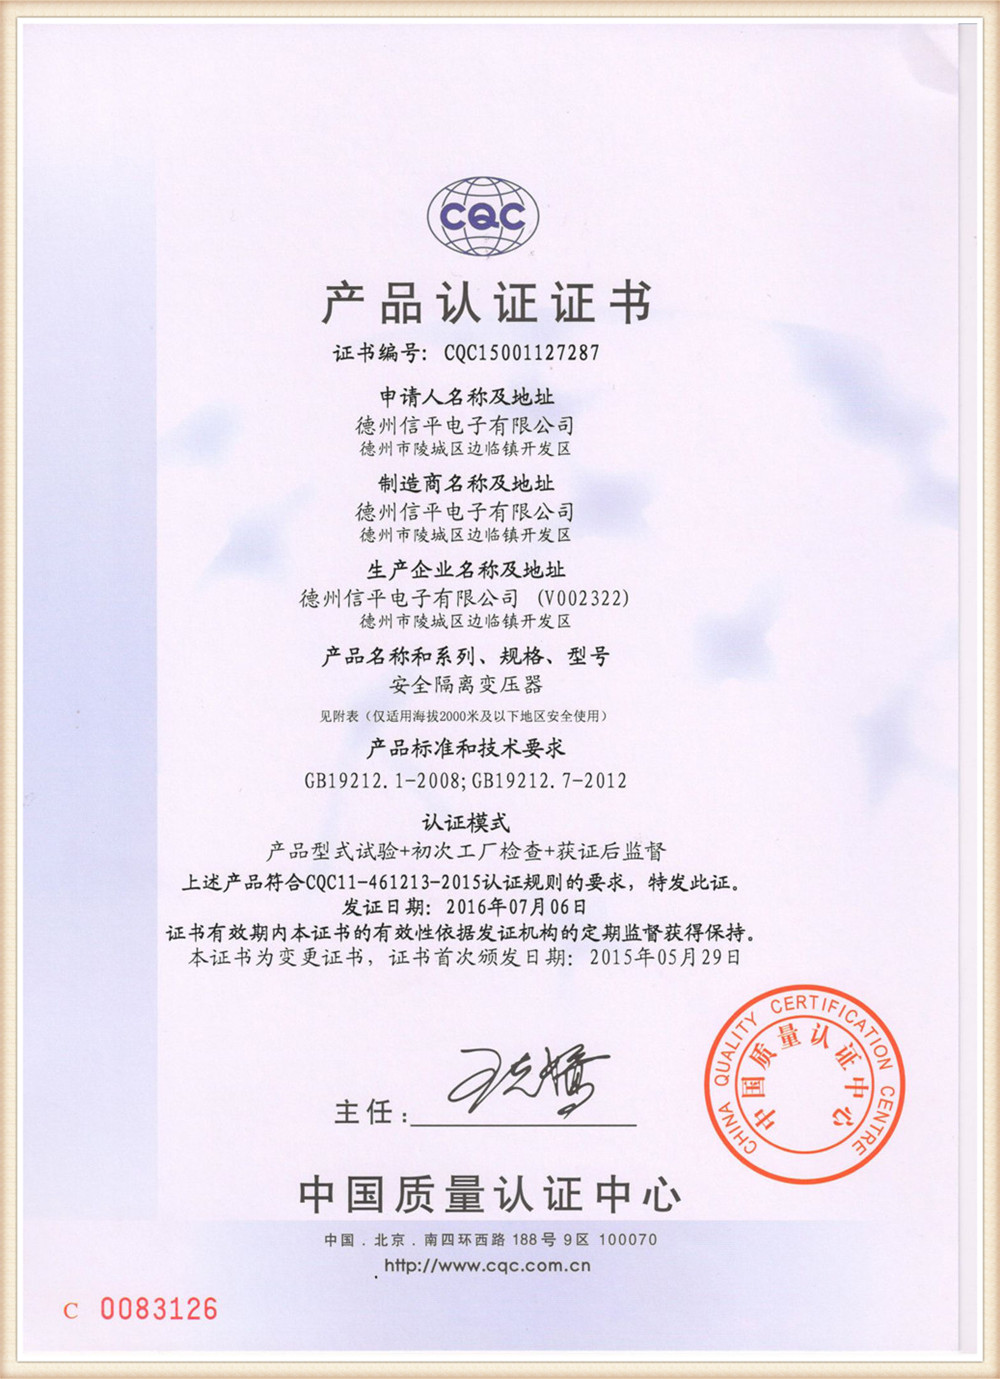 Certificado4